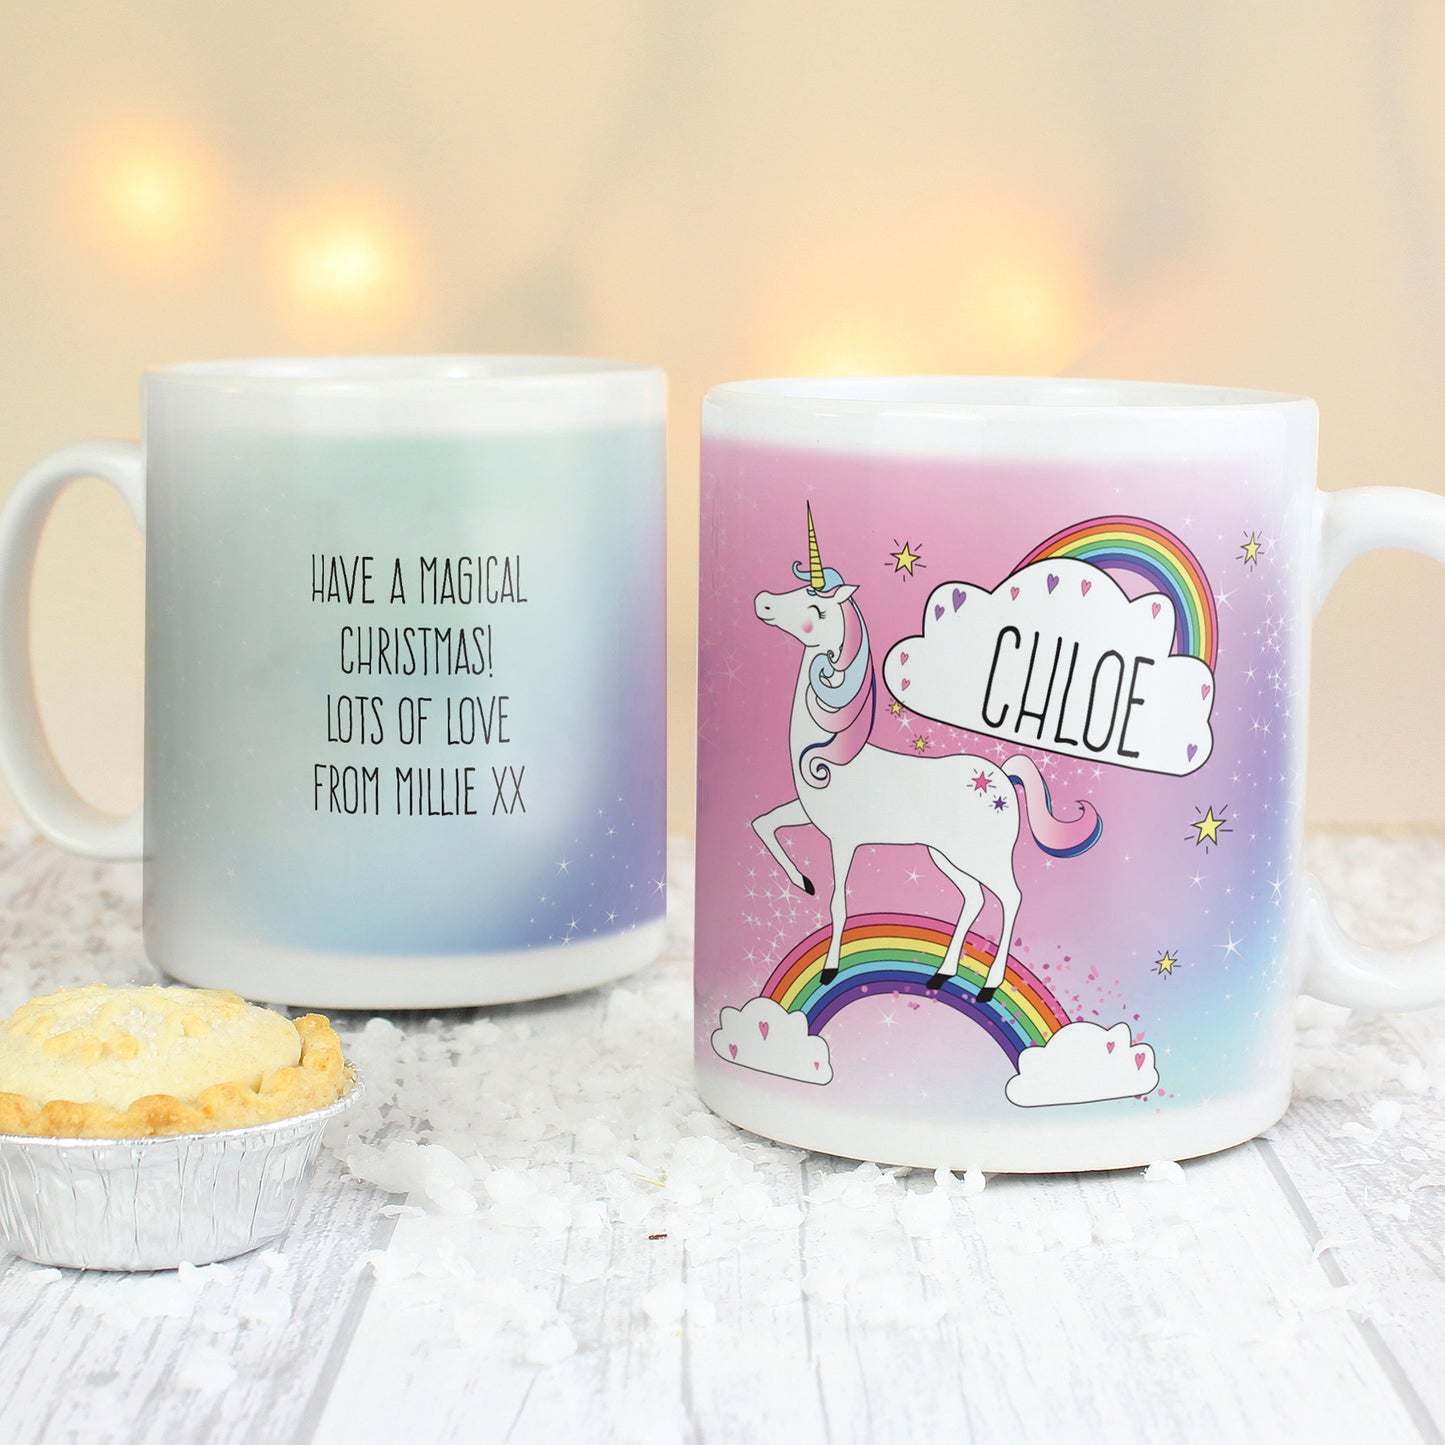 Personalised Unicorn Mug - Personalise It!